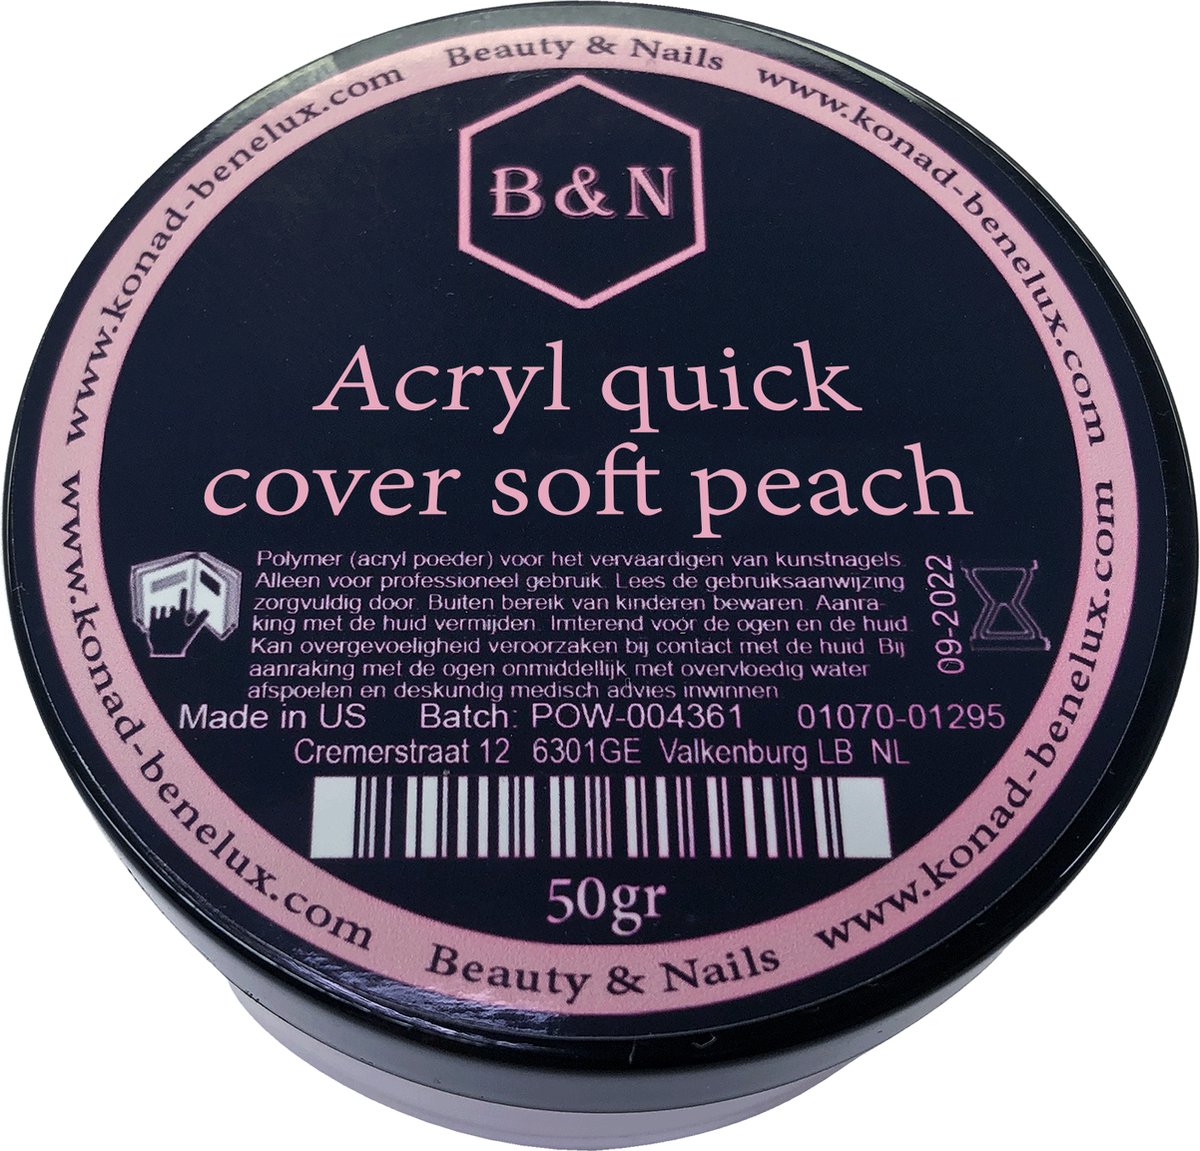 Acryl - quick cover soft peach - 50 gr | B&N - acrylpoeder - VEGAN - acrylpoeder